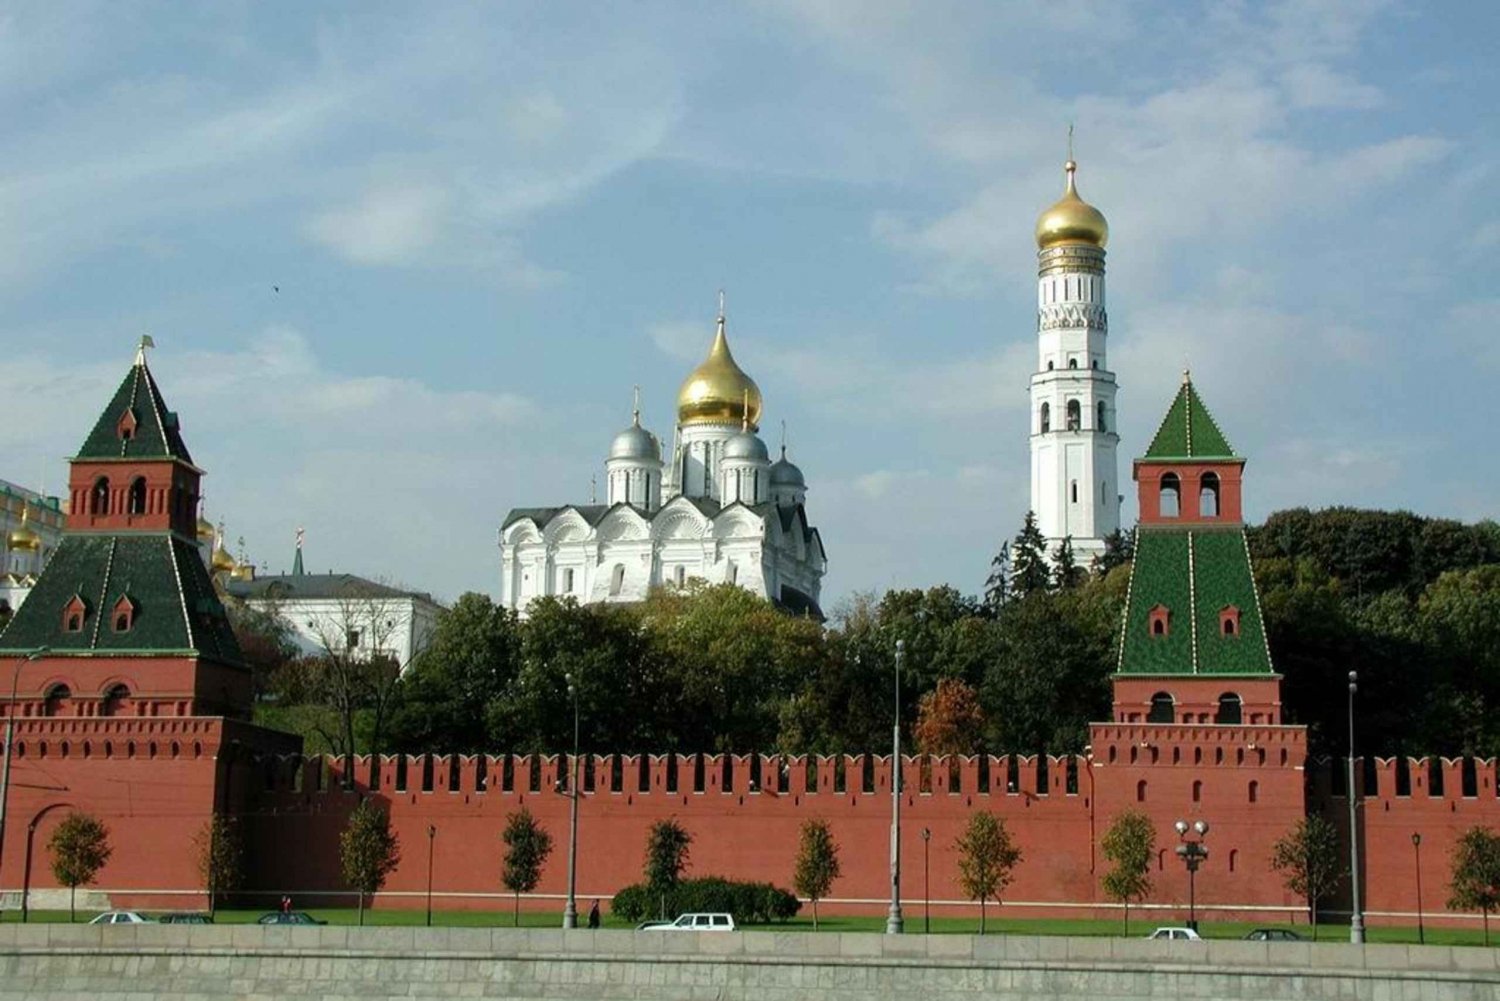 перед вами фотографии четырех достопримечательностей московской области